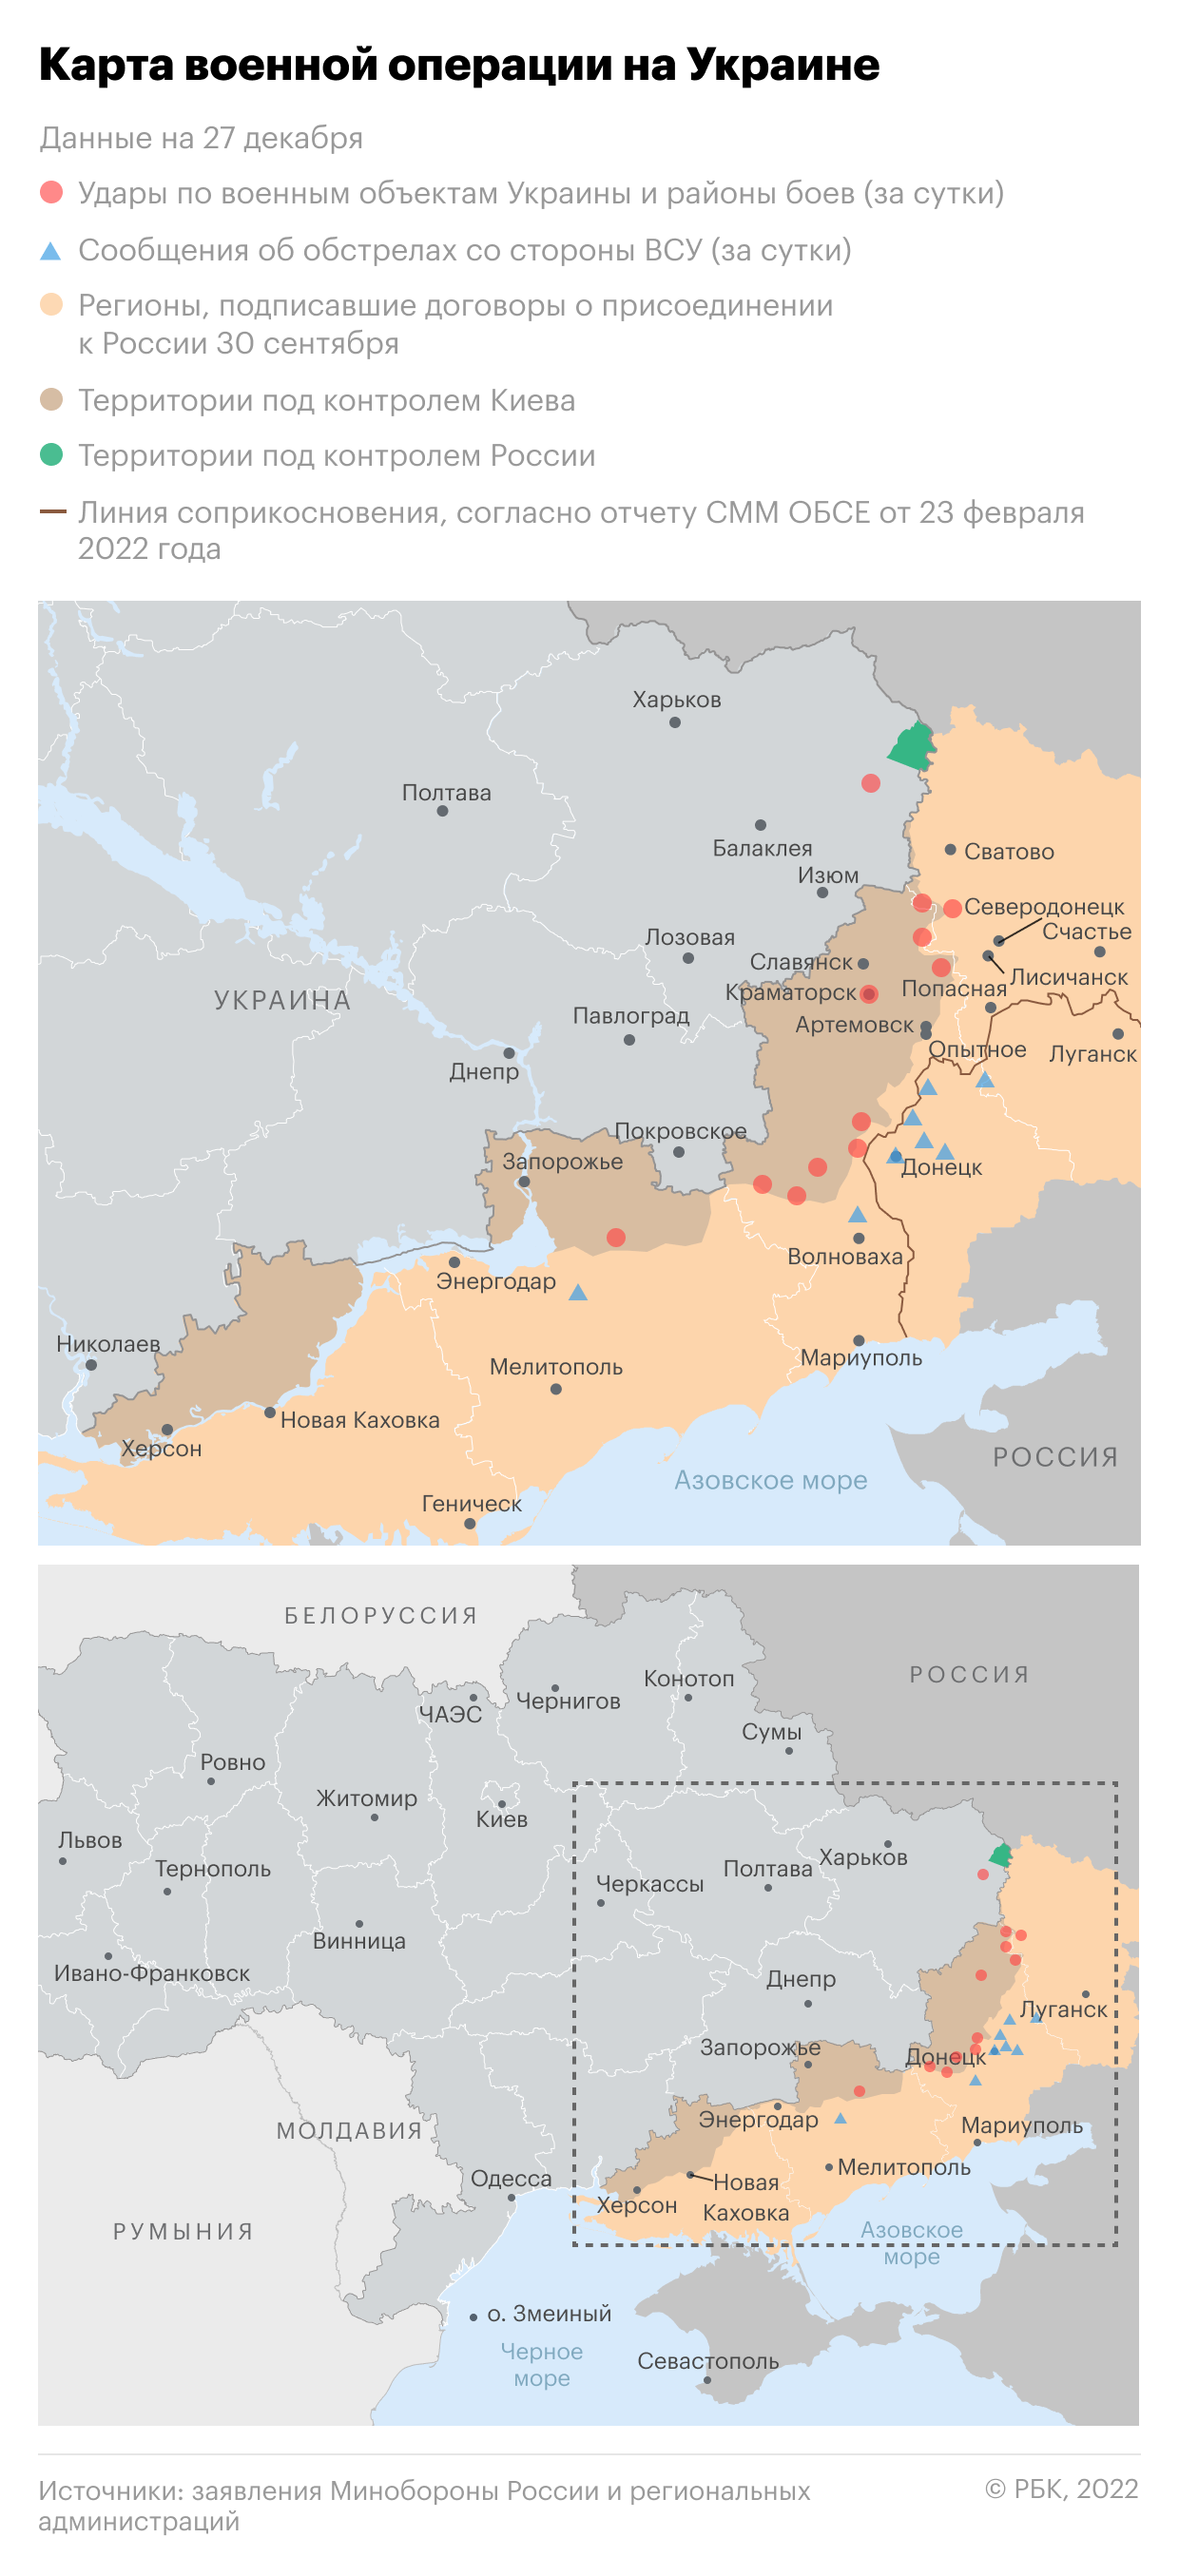 Кремль отверг «планы мира» от Украины без признания «сегодняшних реалий»"/>













